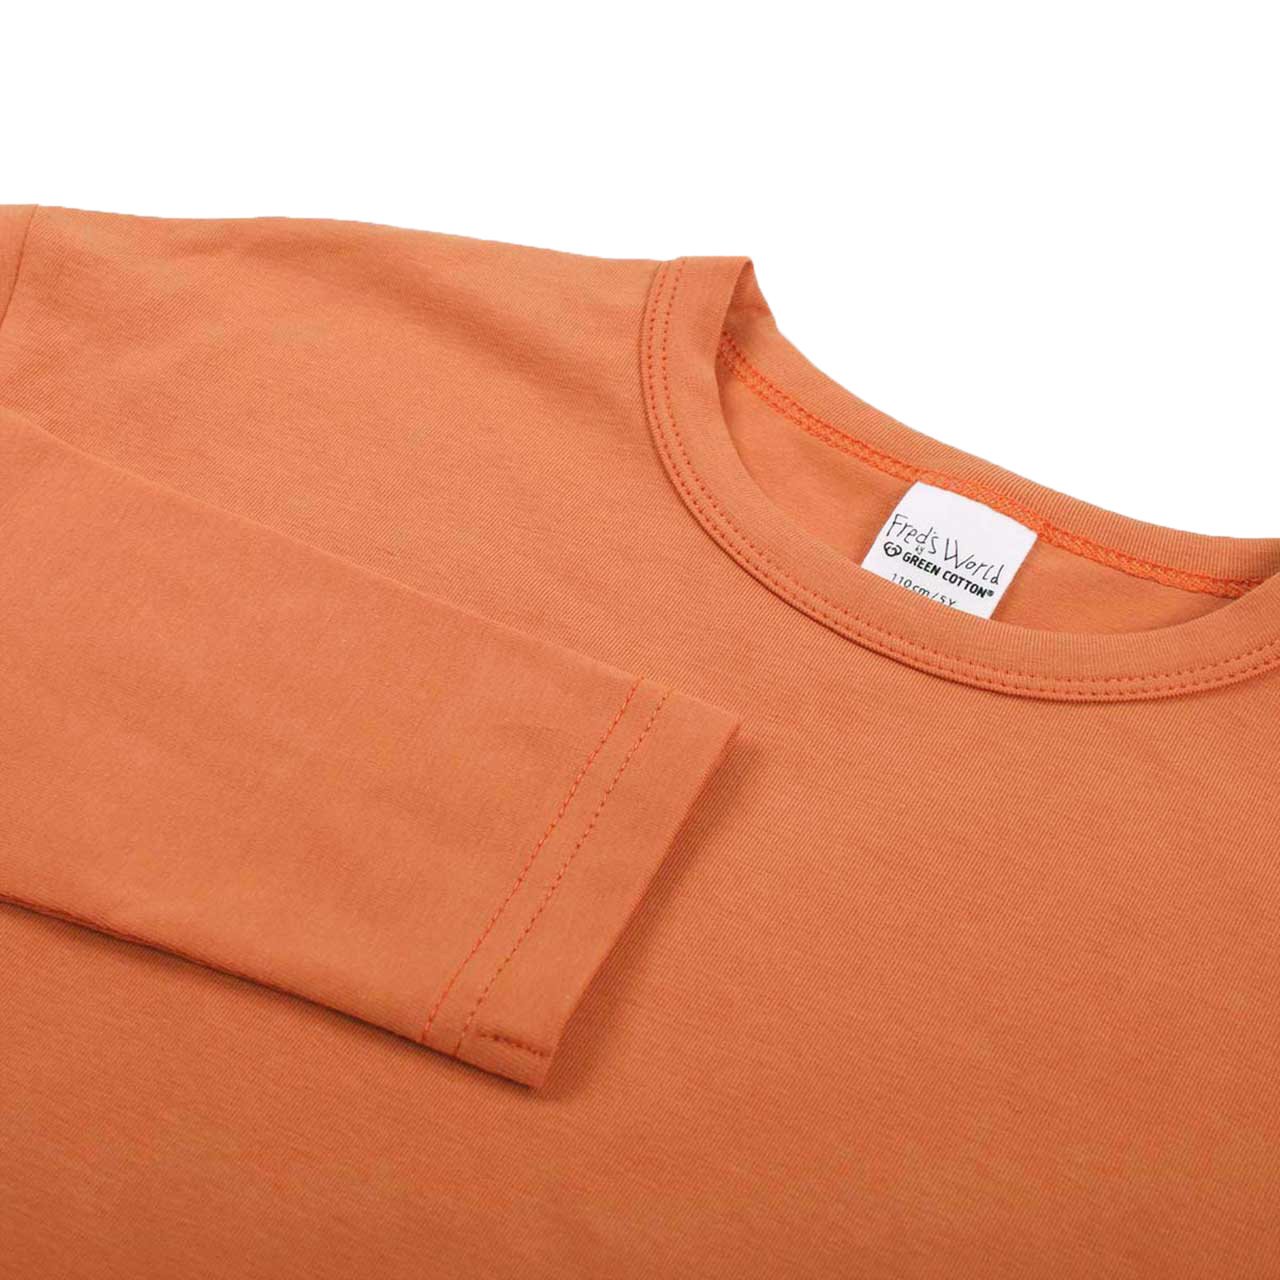 Lockeres Basic Langarmshirt in hellem apricot-orange